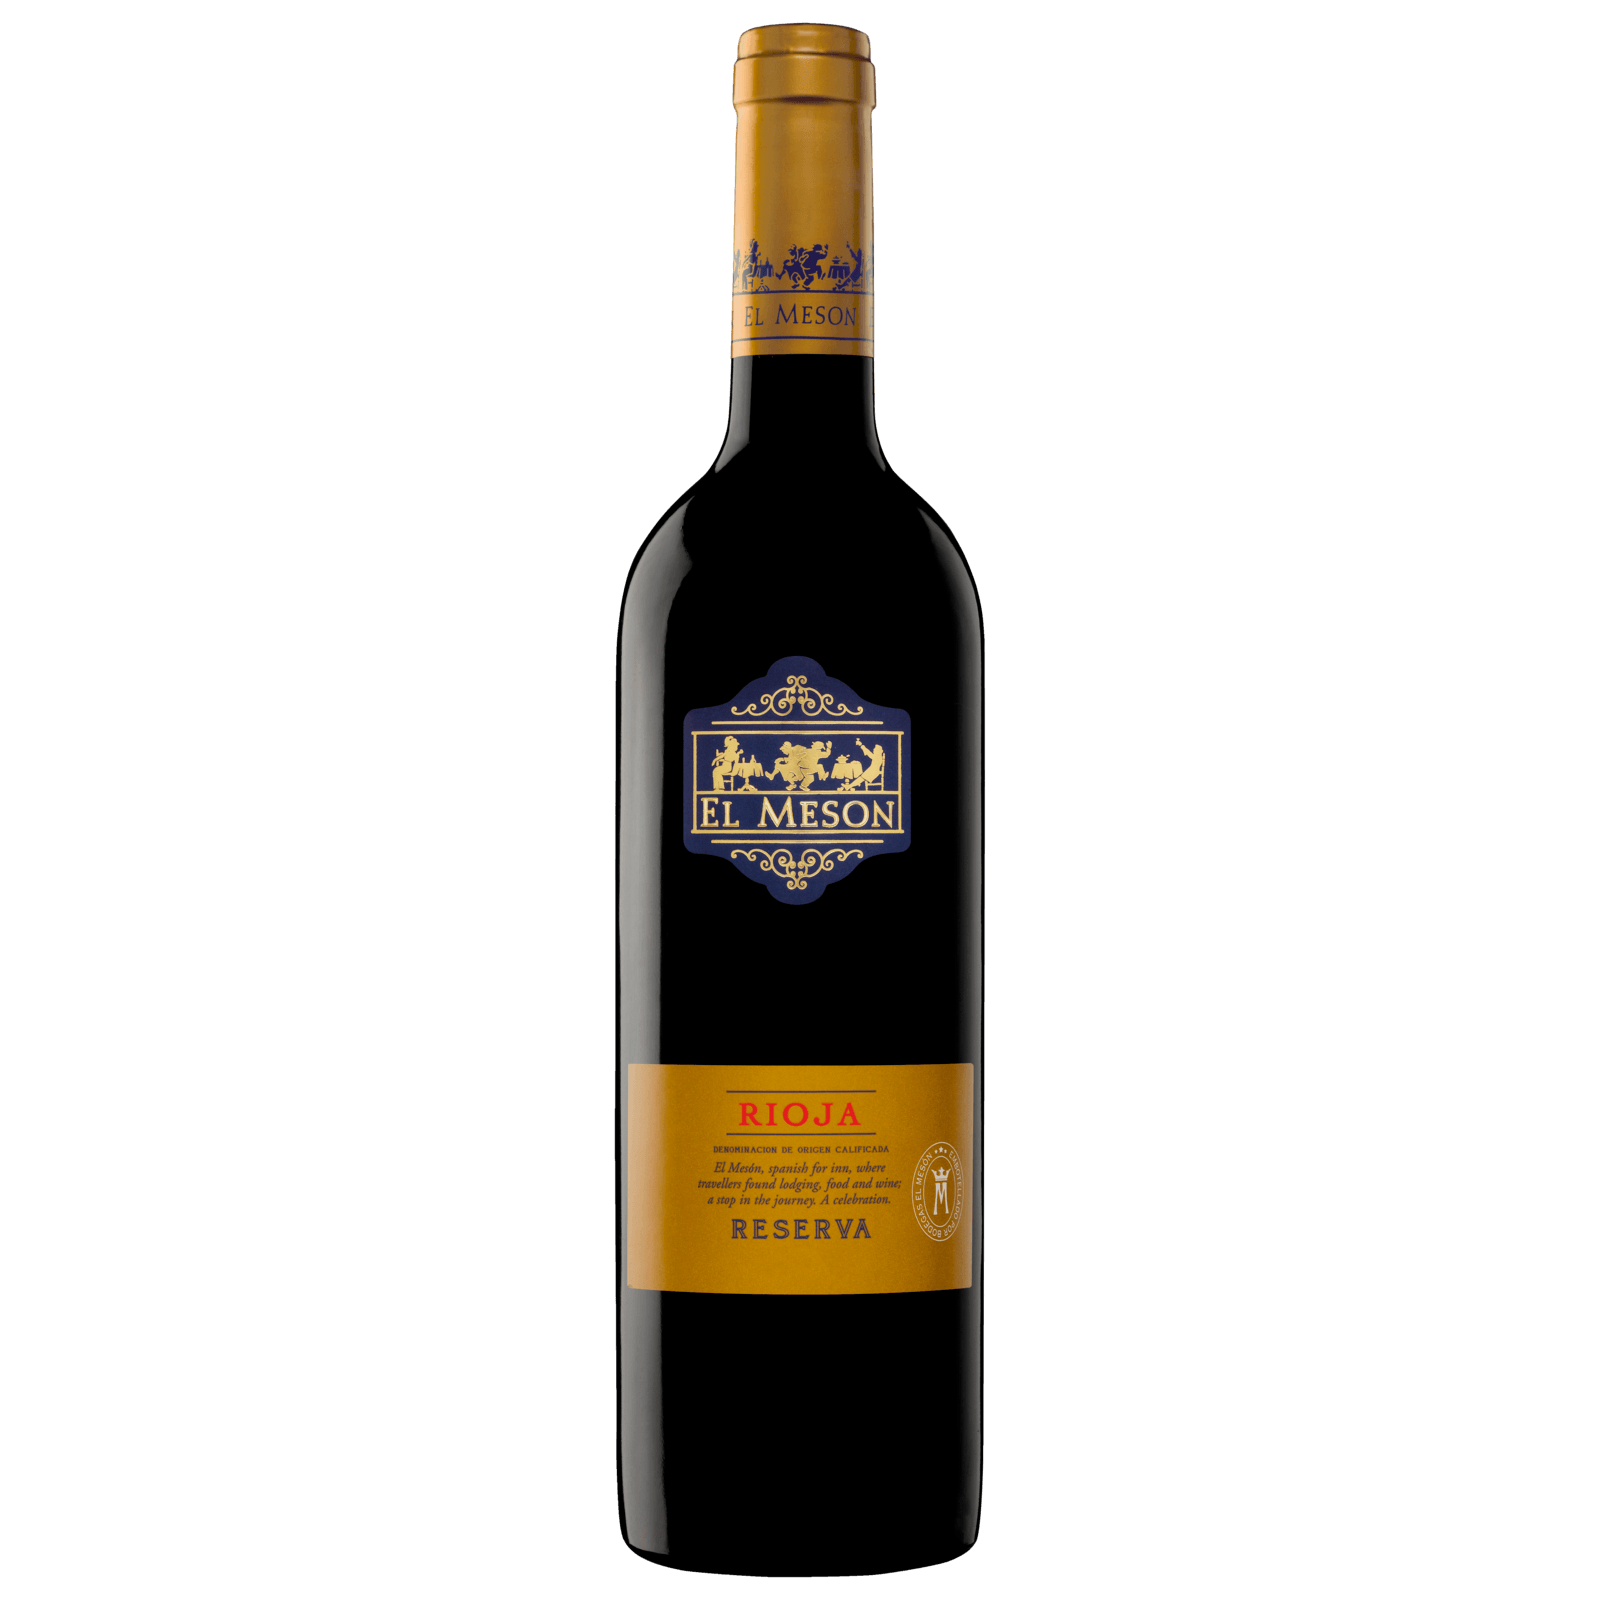 trocken, Lidl Reserva 4,99€ Lebrel Rioja Rotwein 2017 von Cepa DOCa für